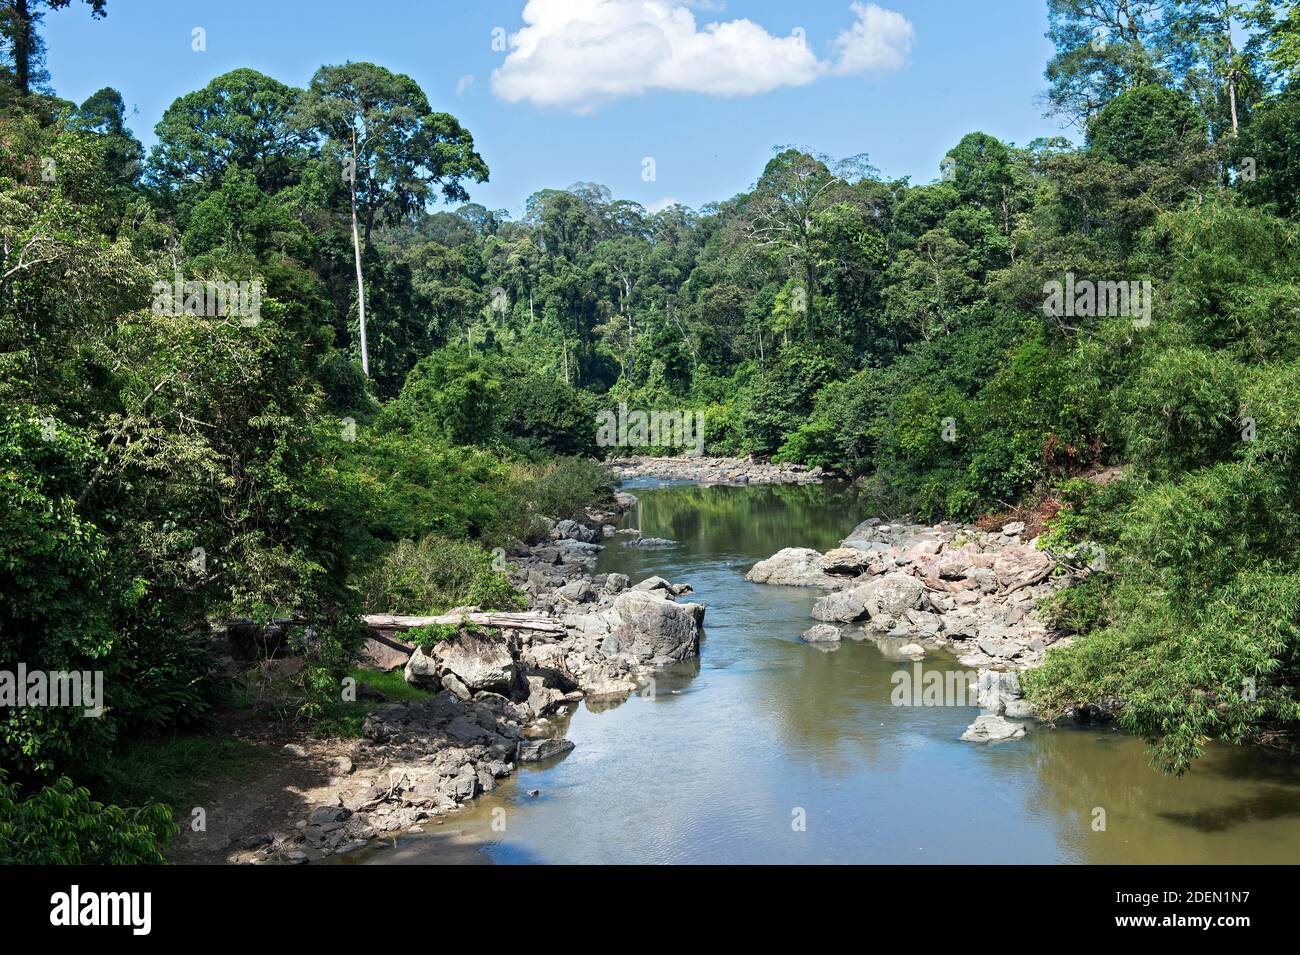 Río Danum que fluye a través de la selva baja de dipterocarpo, Área de Conservación del Valle de Danum, Sabah, Borneo, Malasia Foto de stock